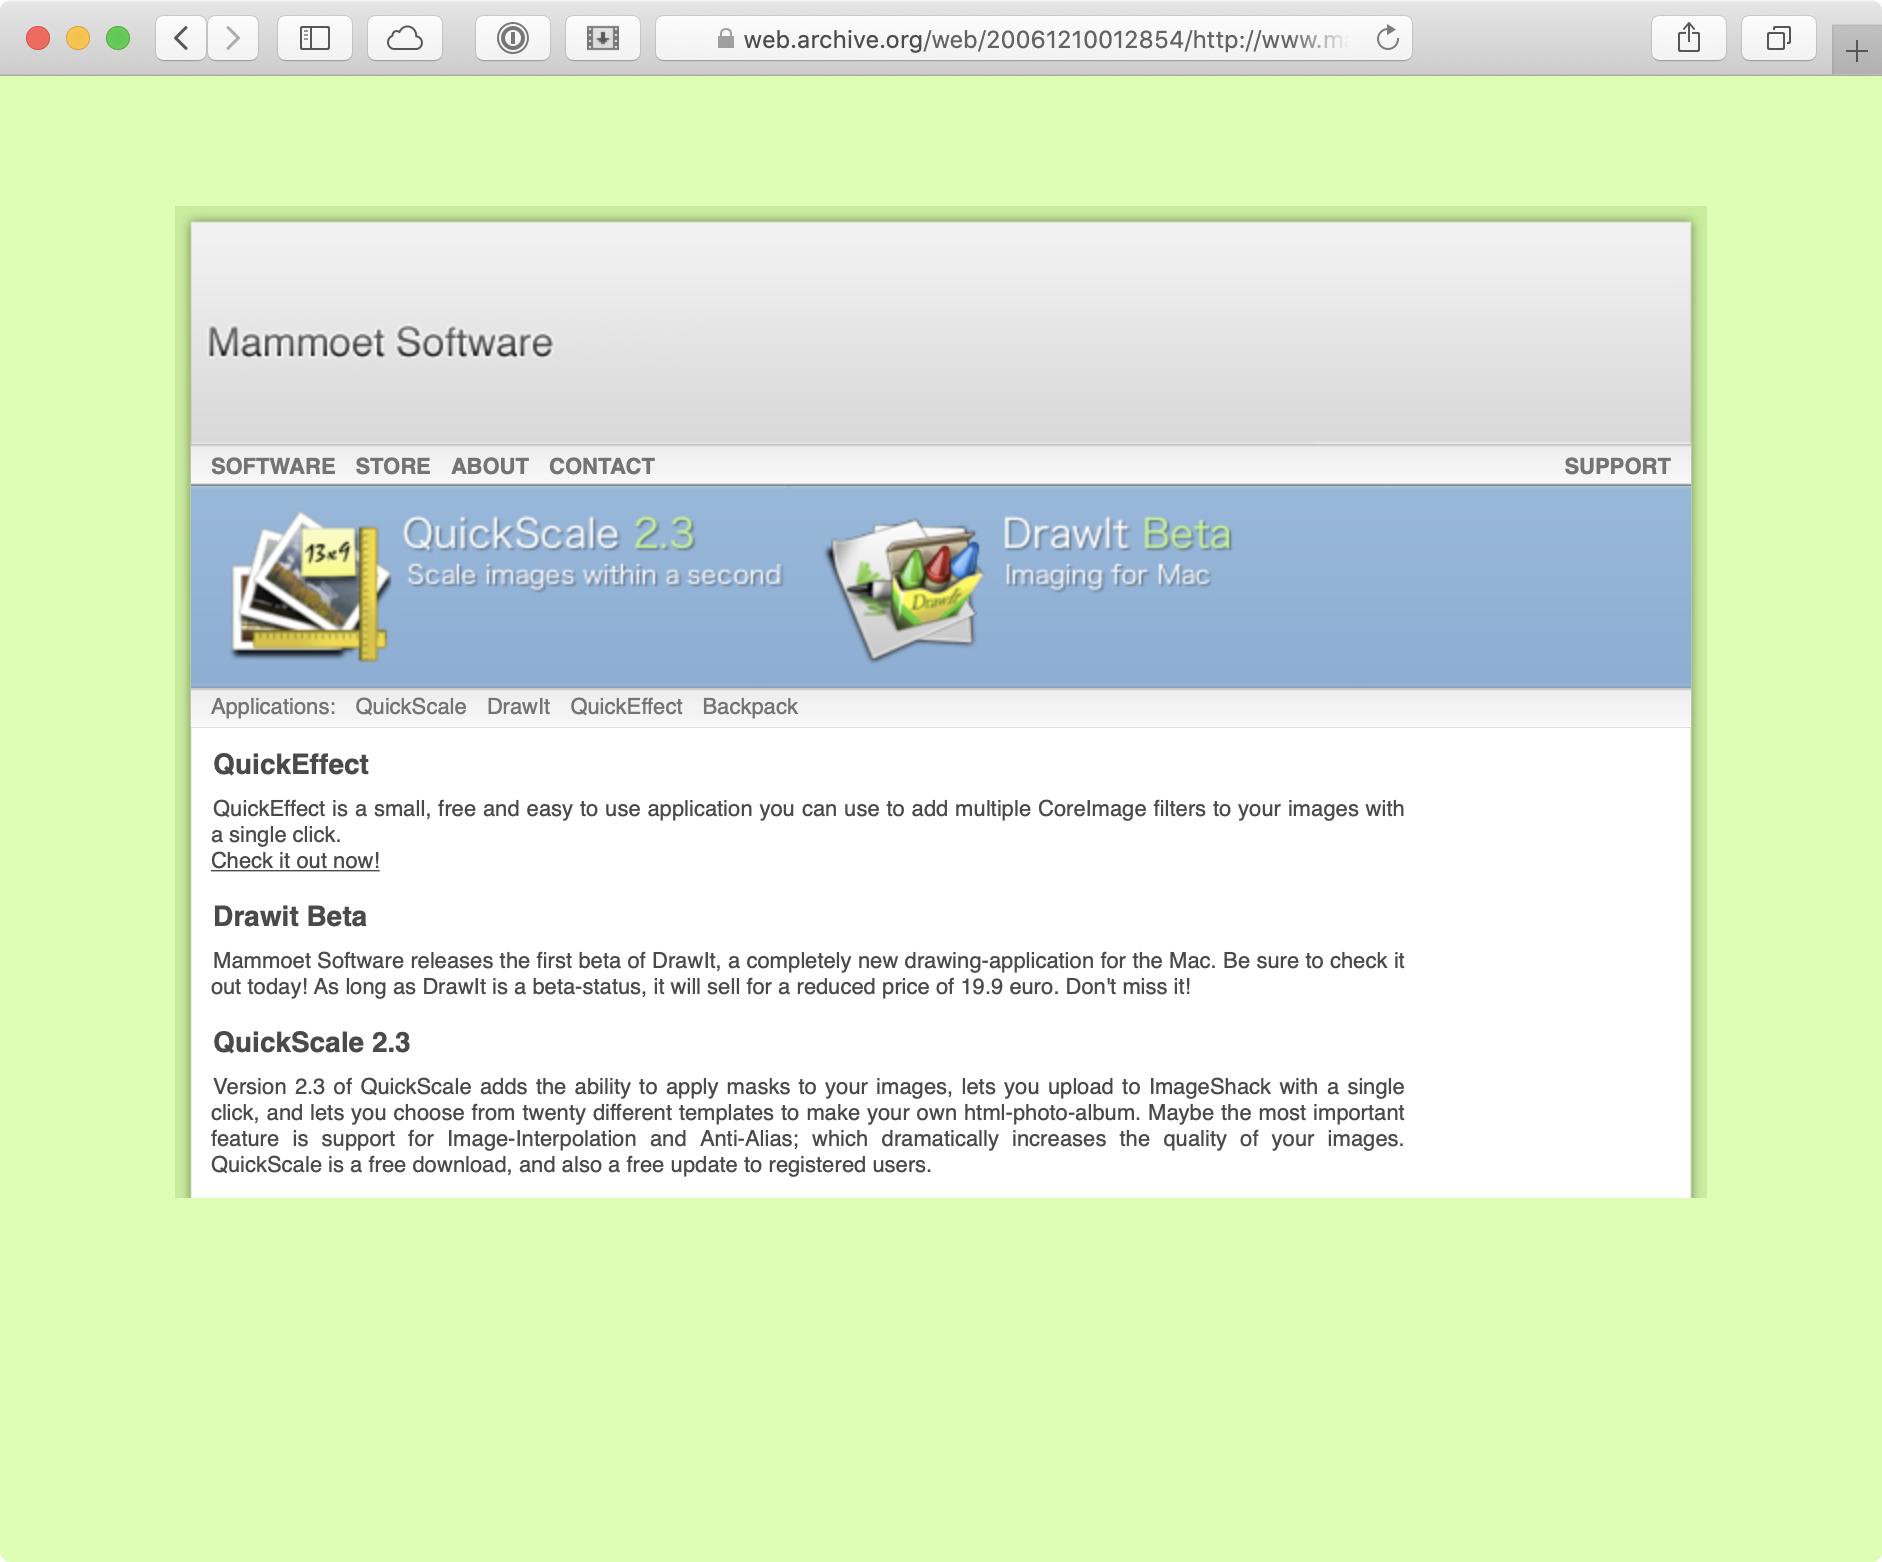 Website Mammoet Software 2006